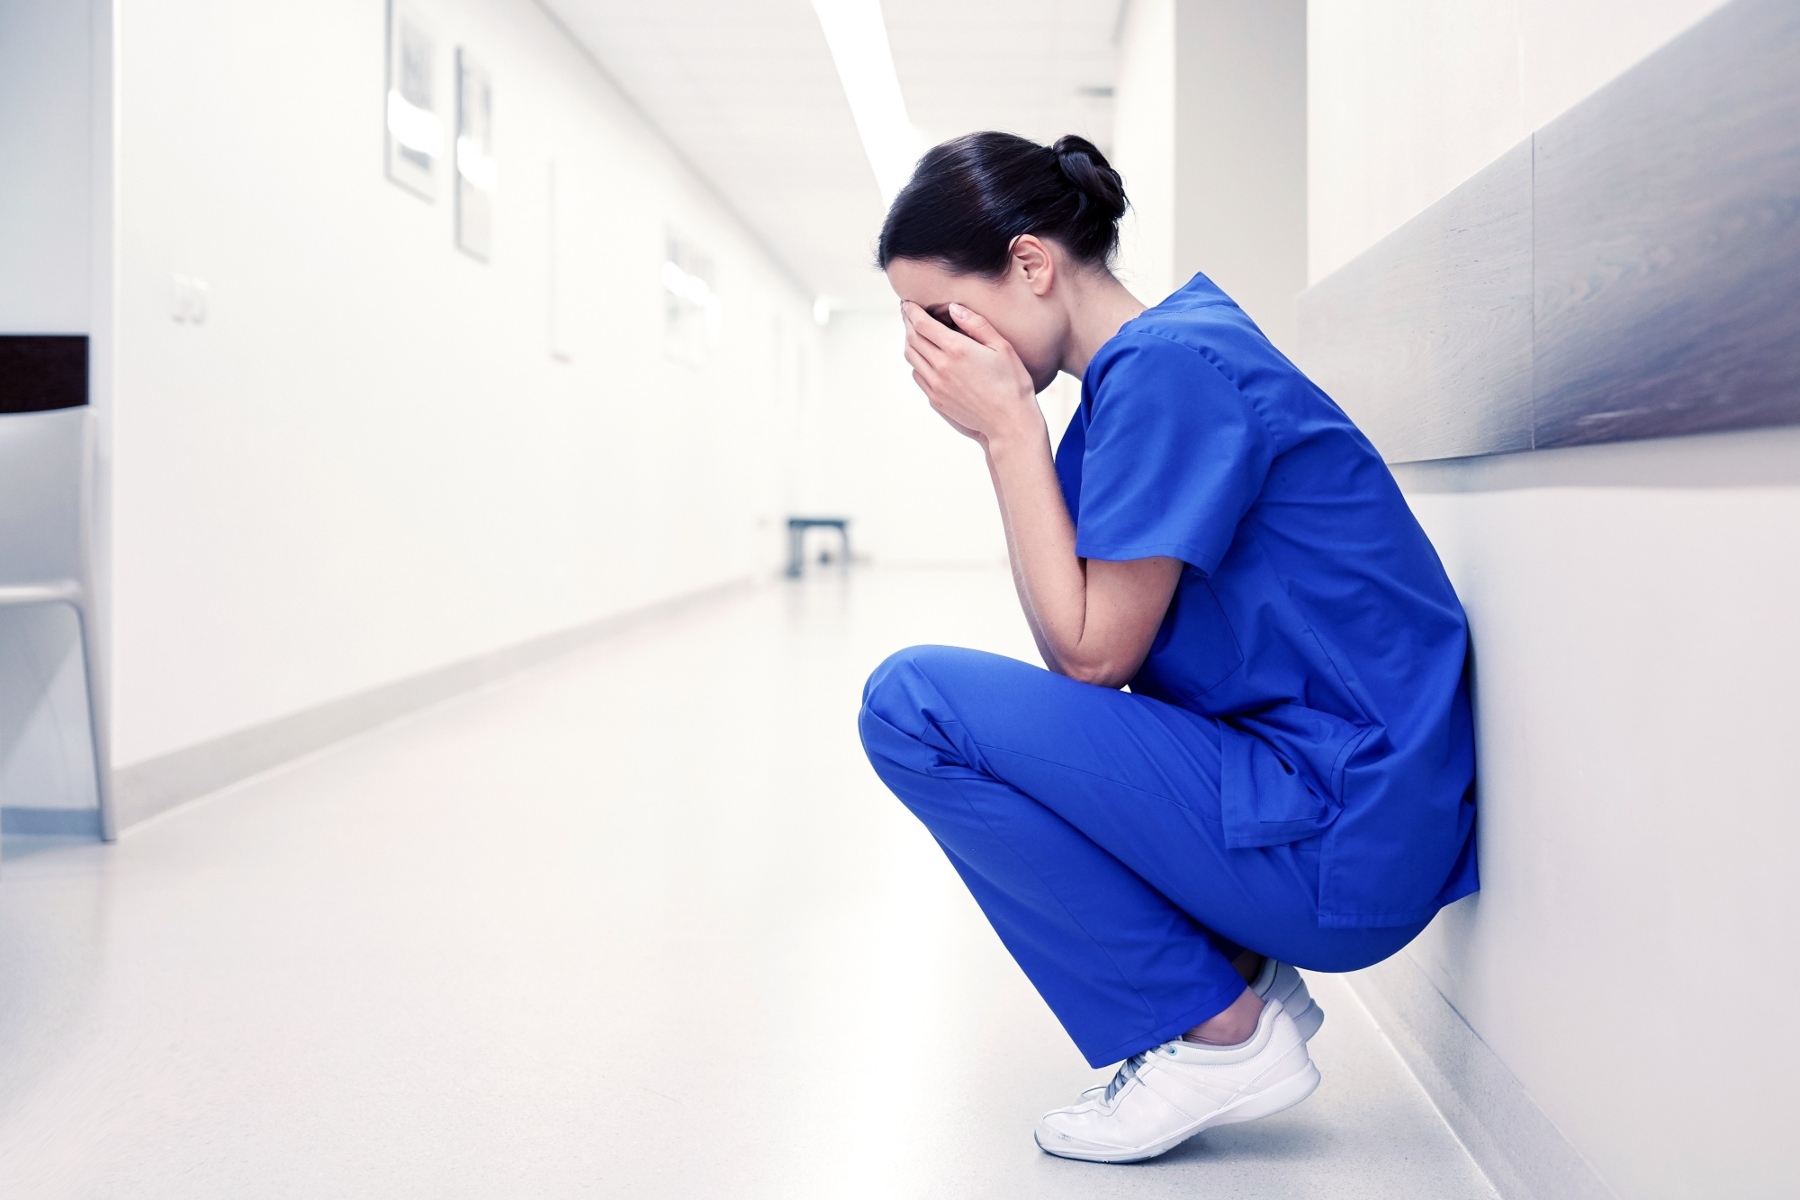 ΗΠΑ: Το 1/3 των νοσηλευτών σχεδιάζει να εγκαταλείψει το επάγγελμα